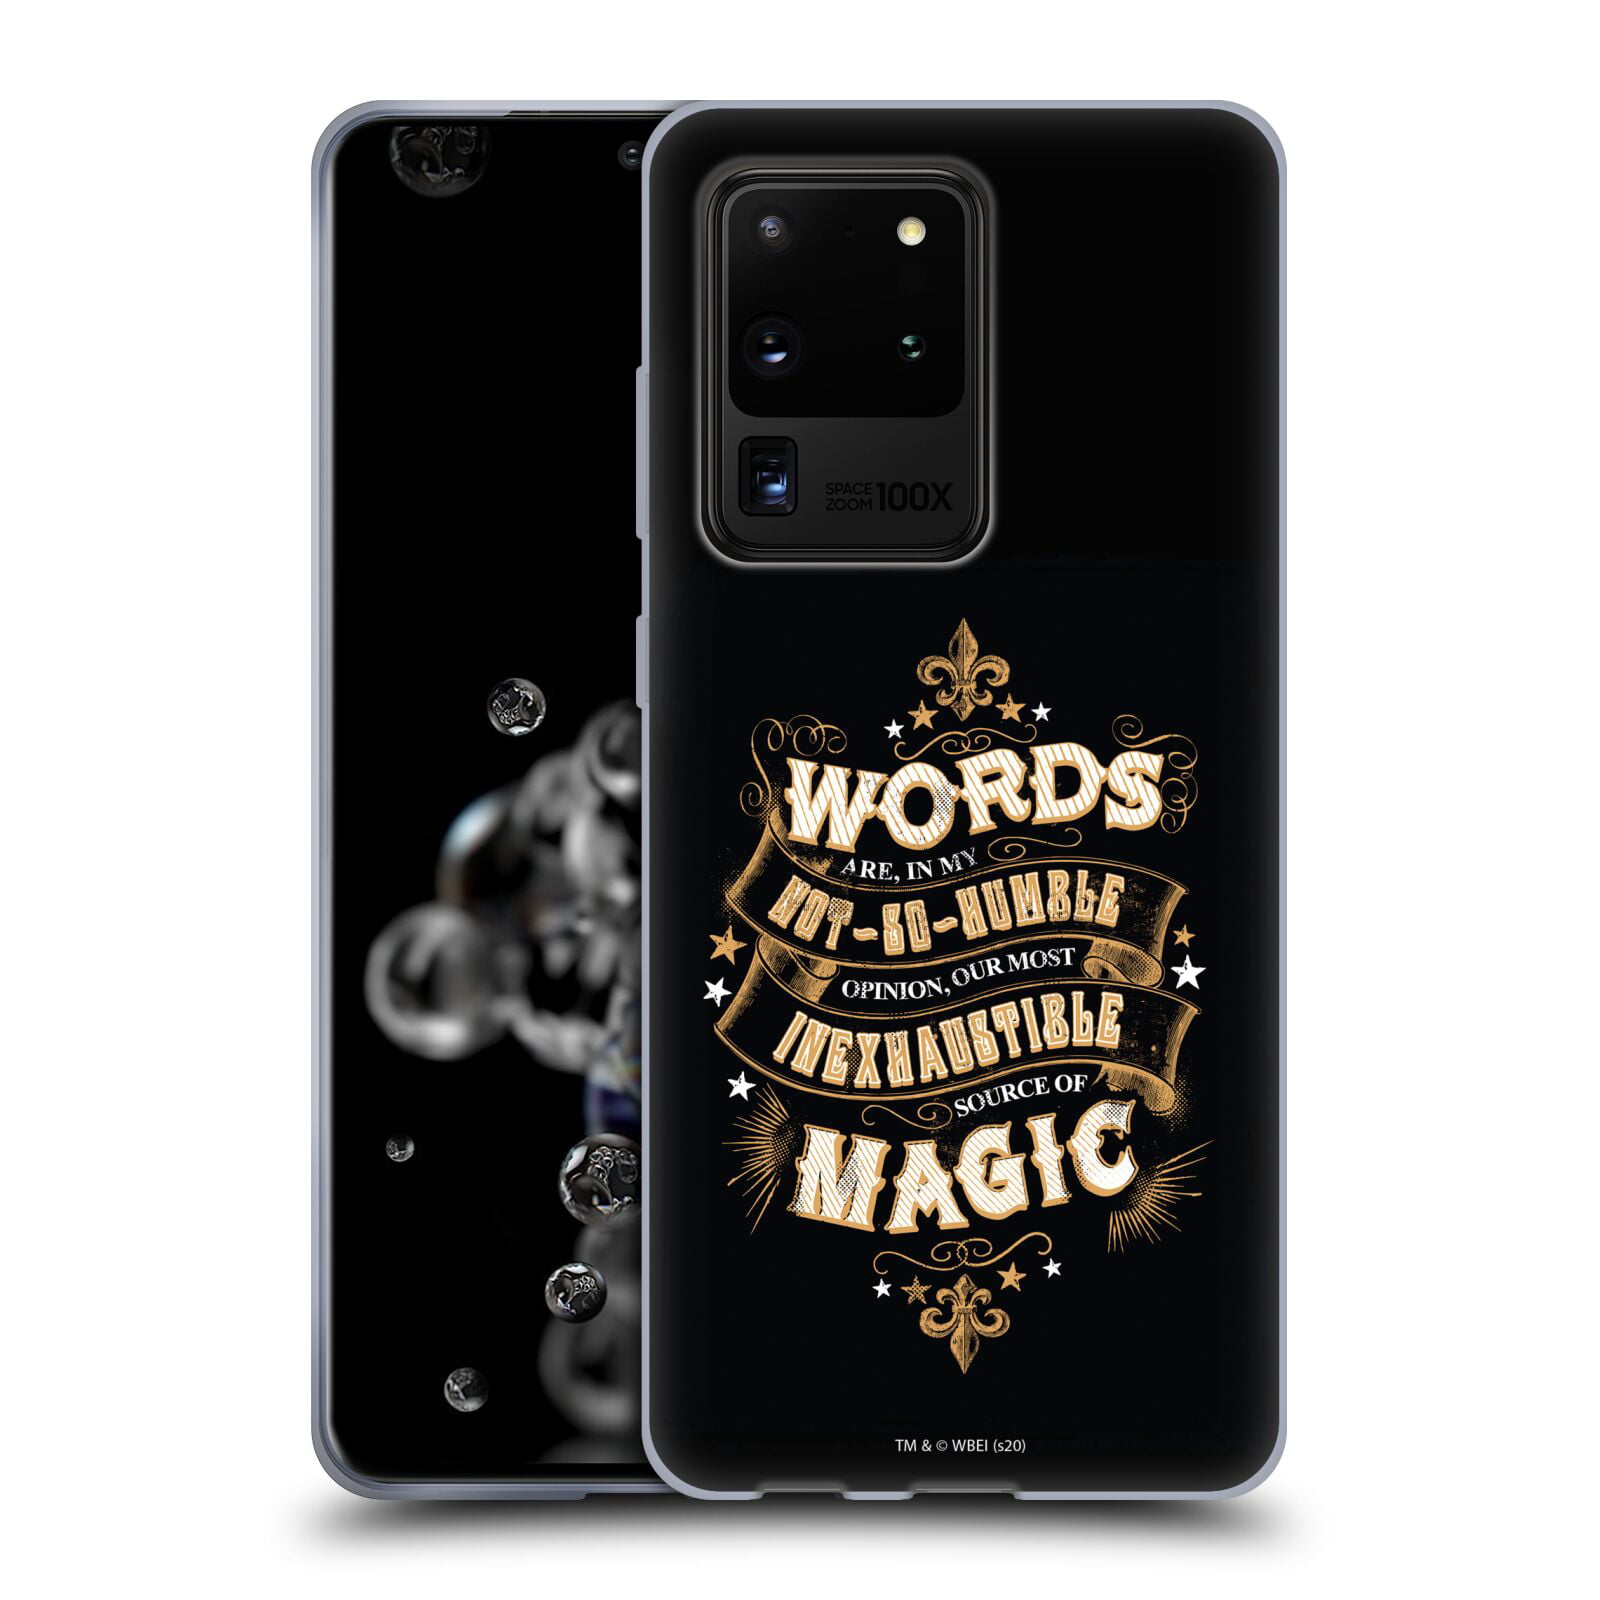 G935 Harry Potter Patronus Telefon Hülle/Case für Samsung Galaxy S7 Edge mit Displayschutzfolie/Silikon Weiches Gel/TPU/iCHOOSE/Farbe